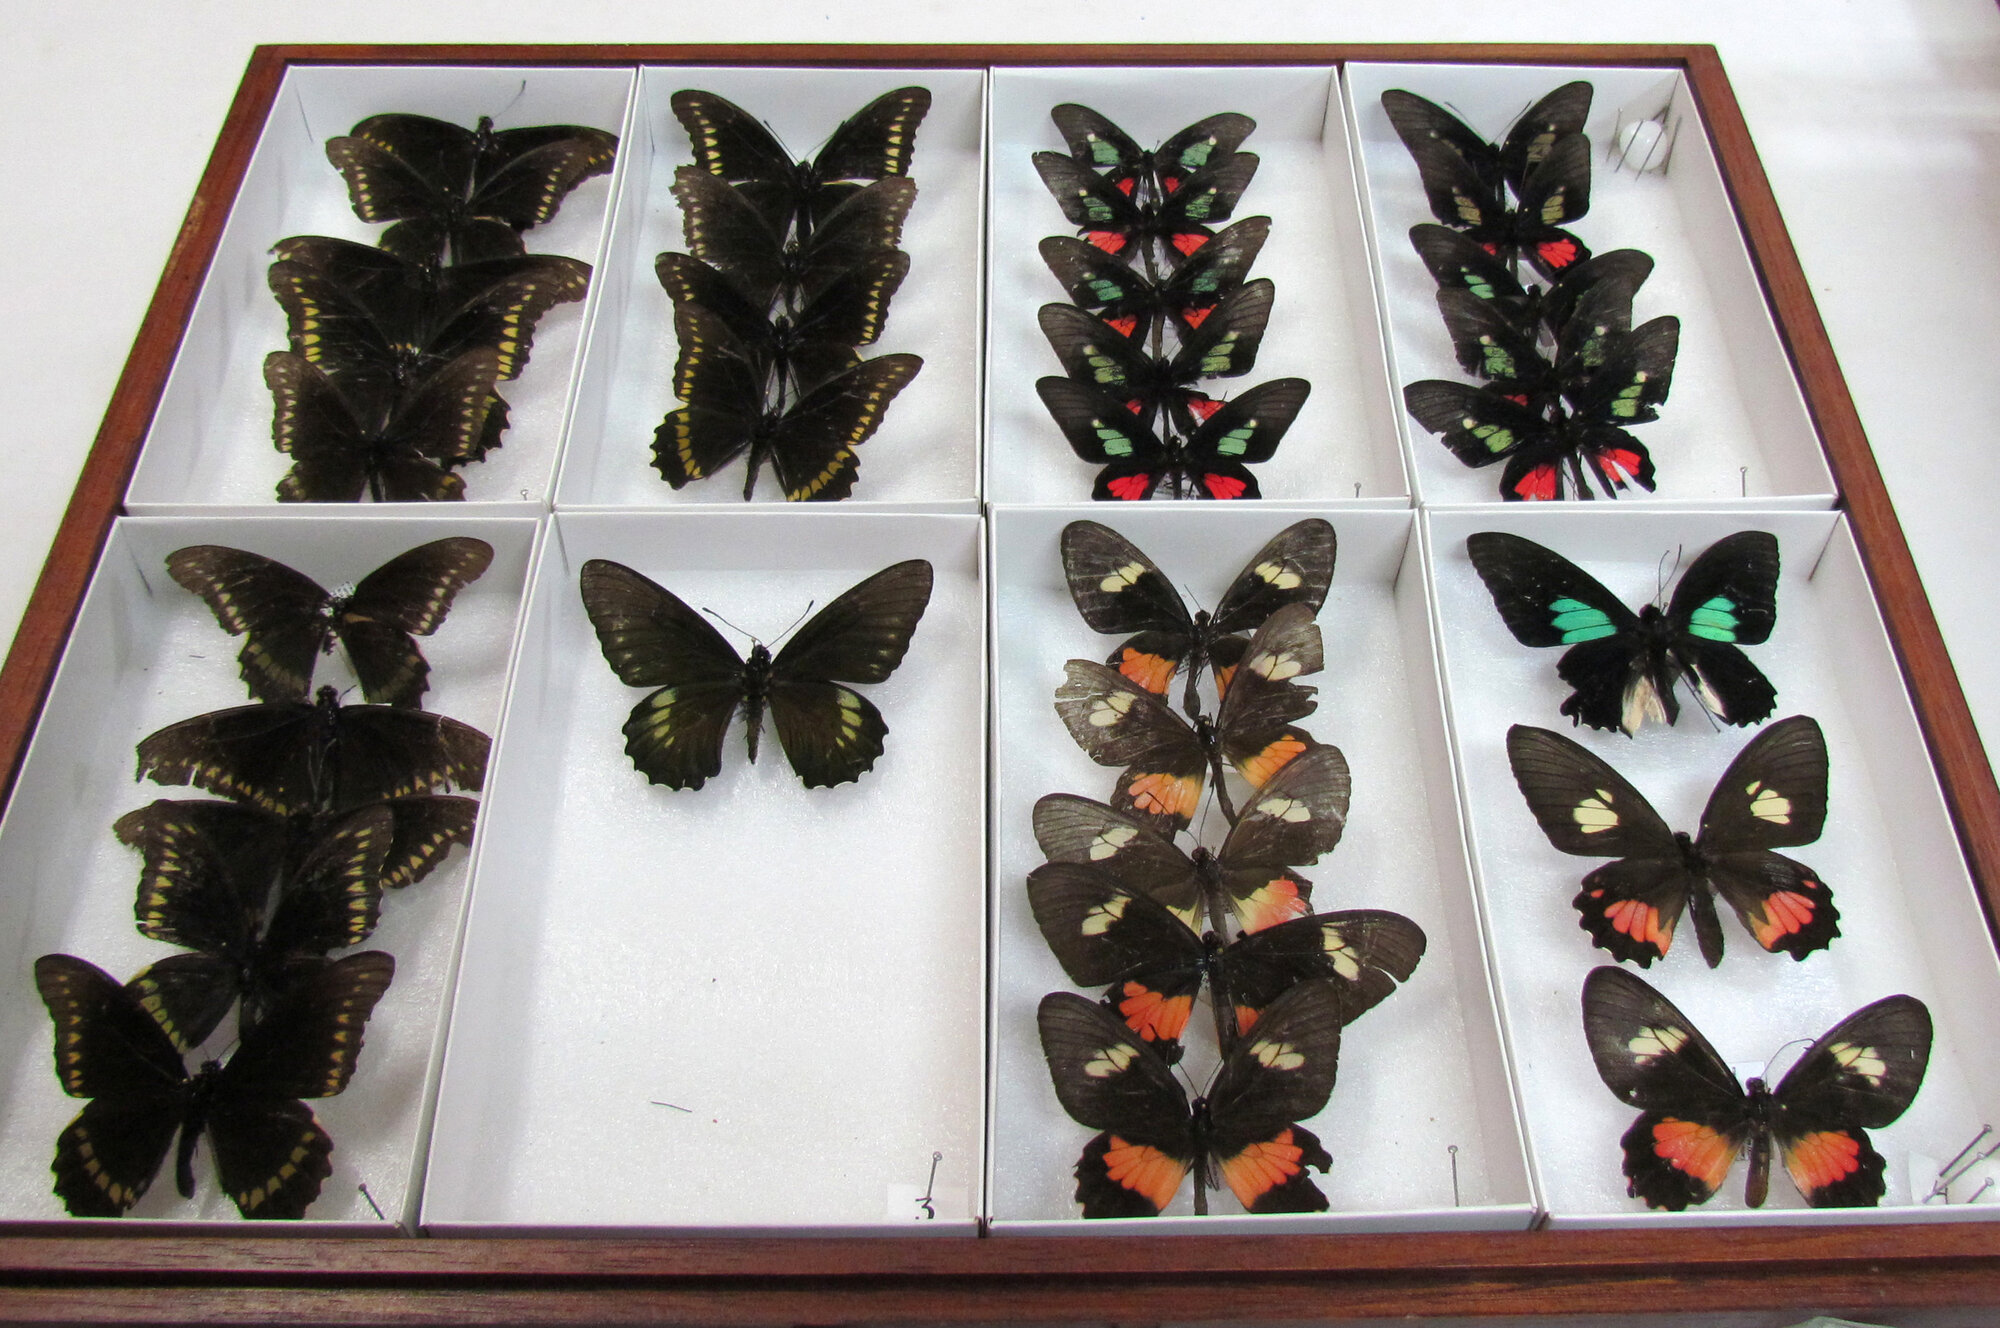 La colección de mariposas de la Sede Orinoquia es una de las más vistosas del acervo entomológico.